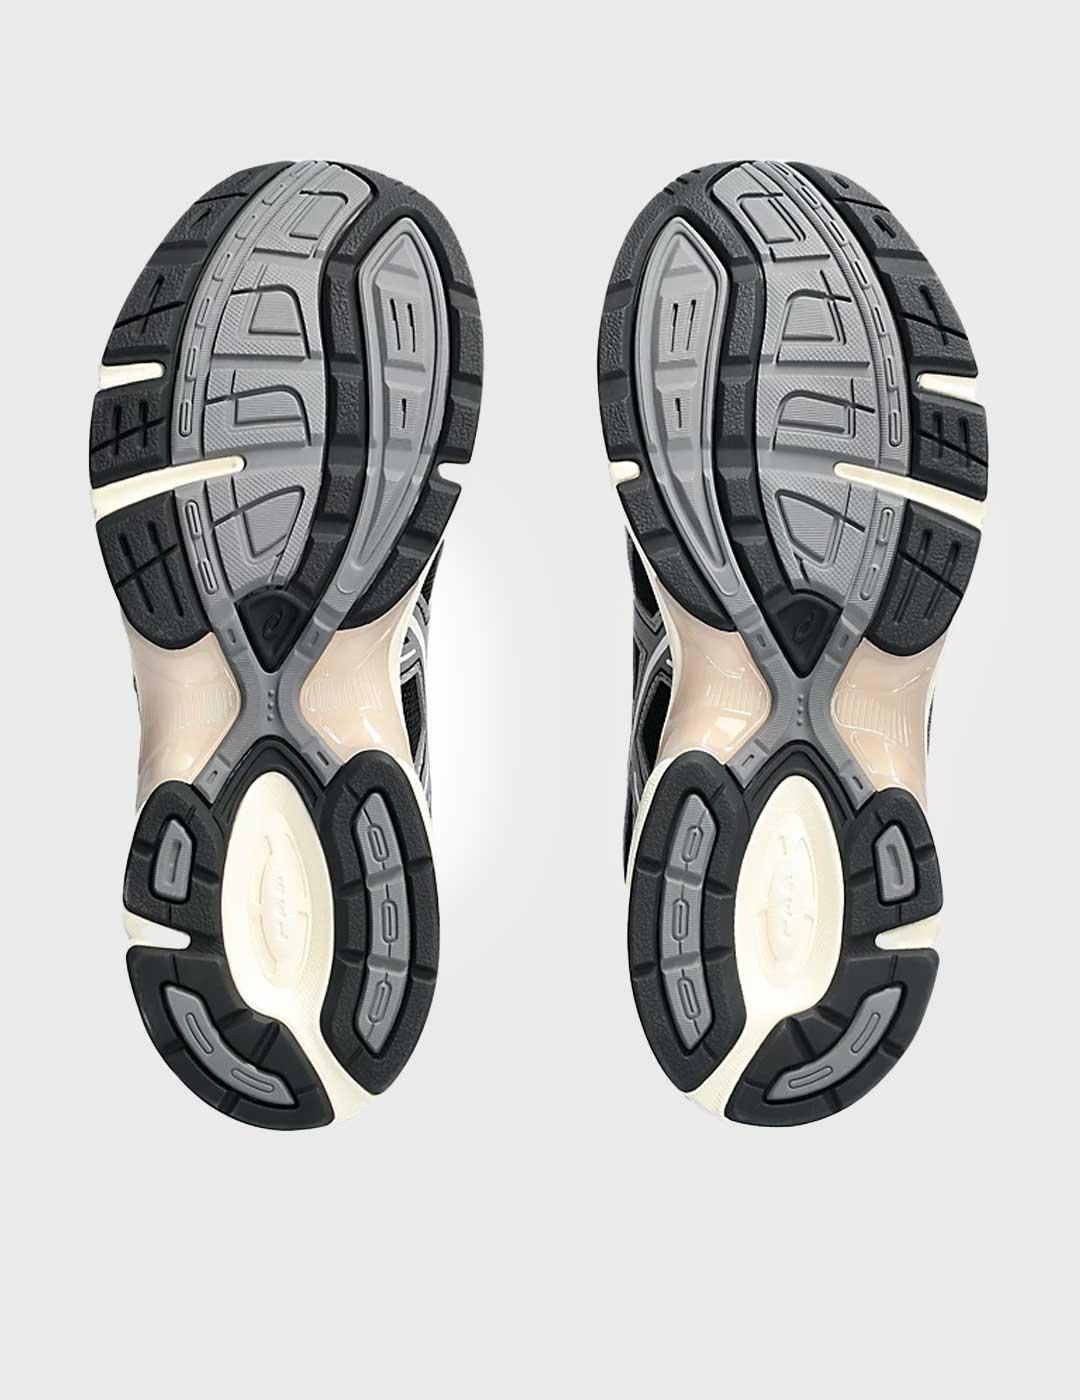 Zapatillas Asics Gel 1130 grises para hombre y mujer